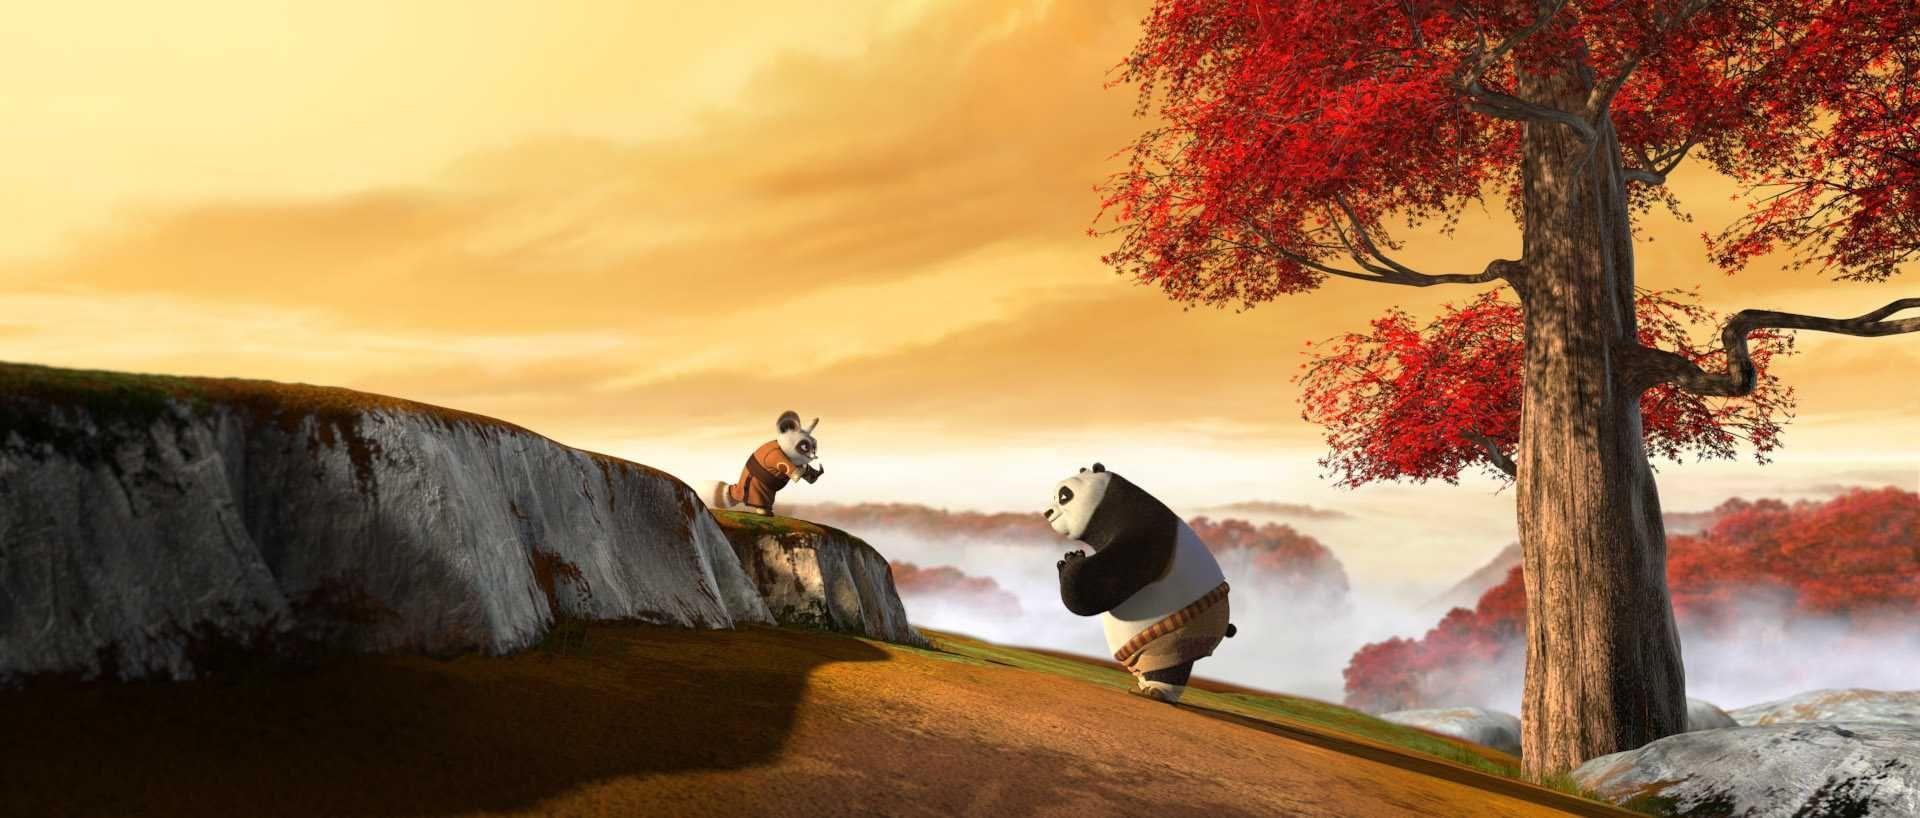 Kung Fu Panda Wallpapers - Wallpaper Cave